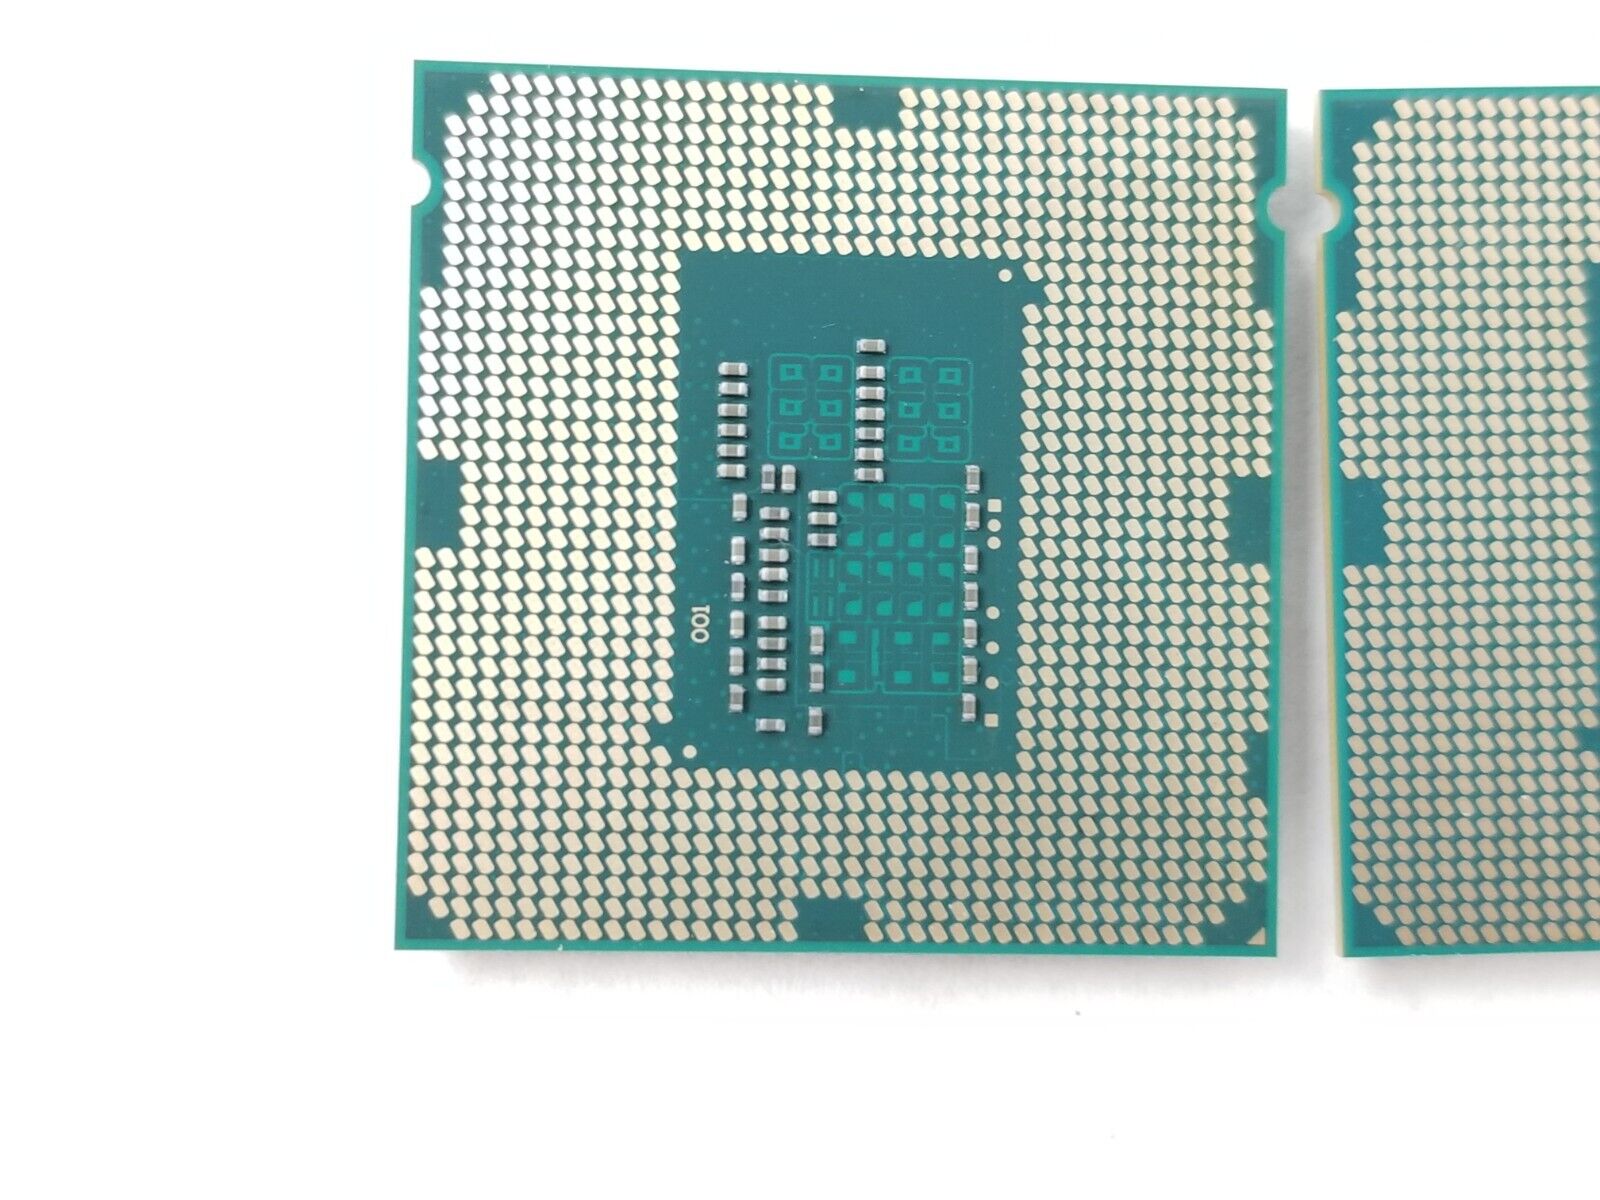 Lot of (2) Intel Core i3-4150T SR1PG 3.0GHz Dual-Core LGA1150 CPU Processor